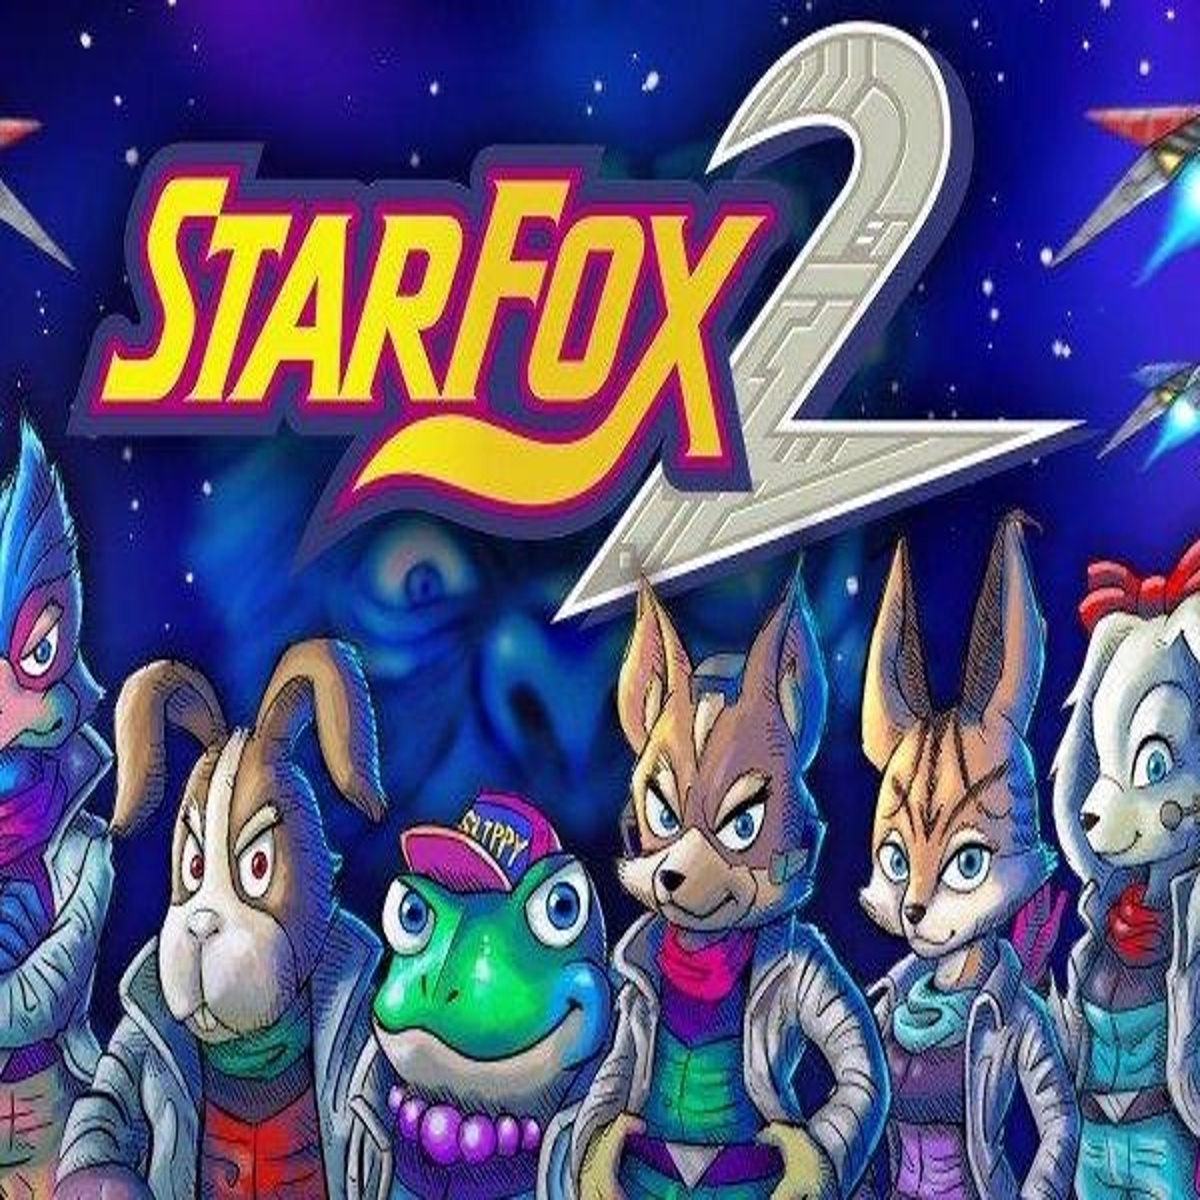 Official Japanese Box Art for Star Fox 2 : r/nintendo